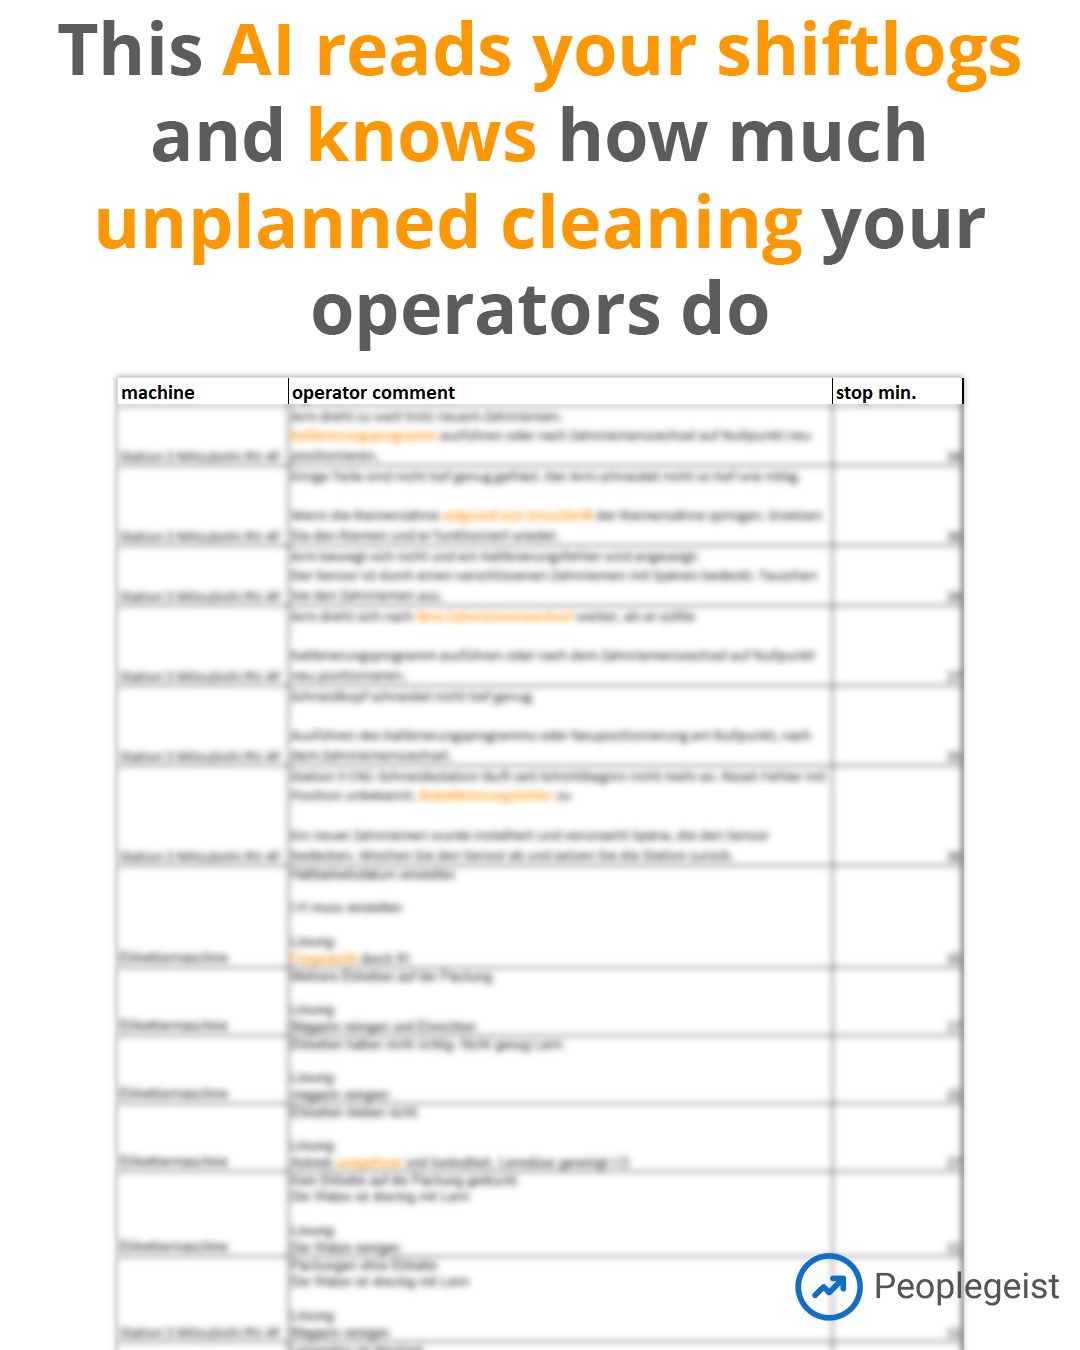 Unplanned cleanings